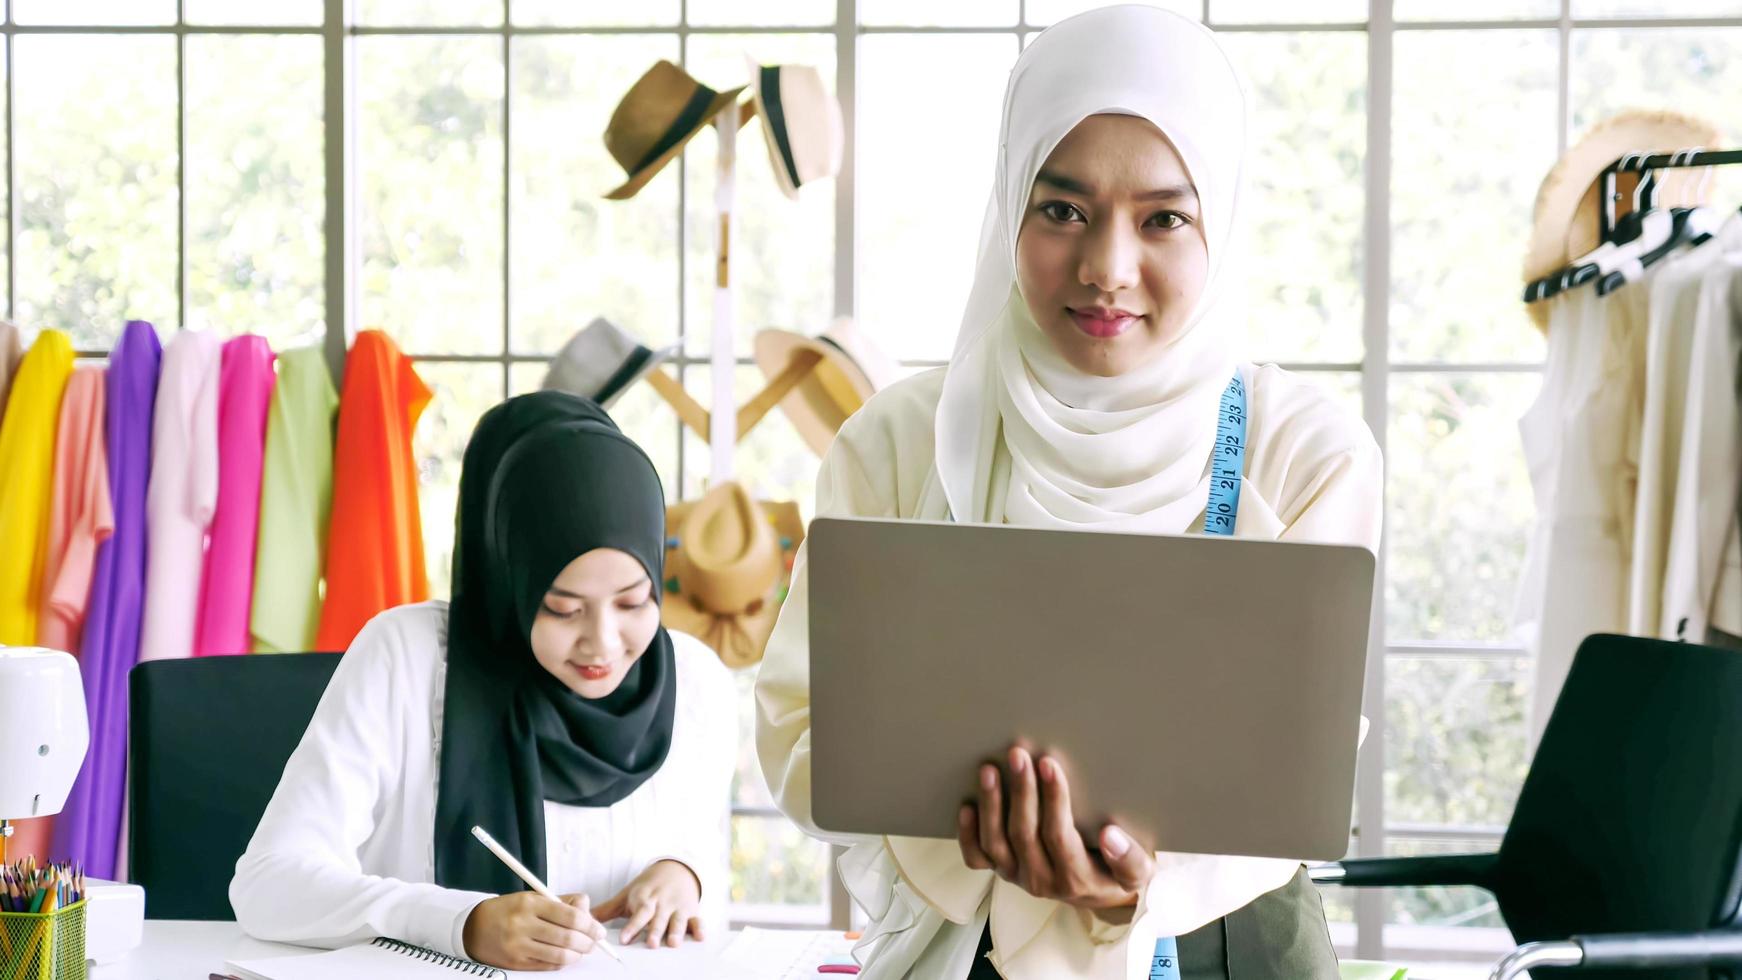 glückliche muslimische frauen, die im bekleidungsbüro zusammenarbeiten. foto